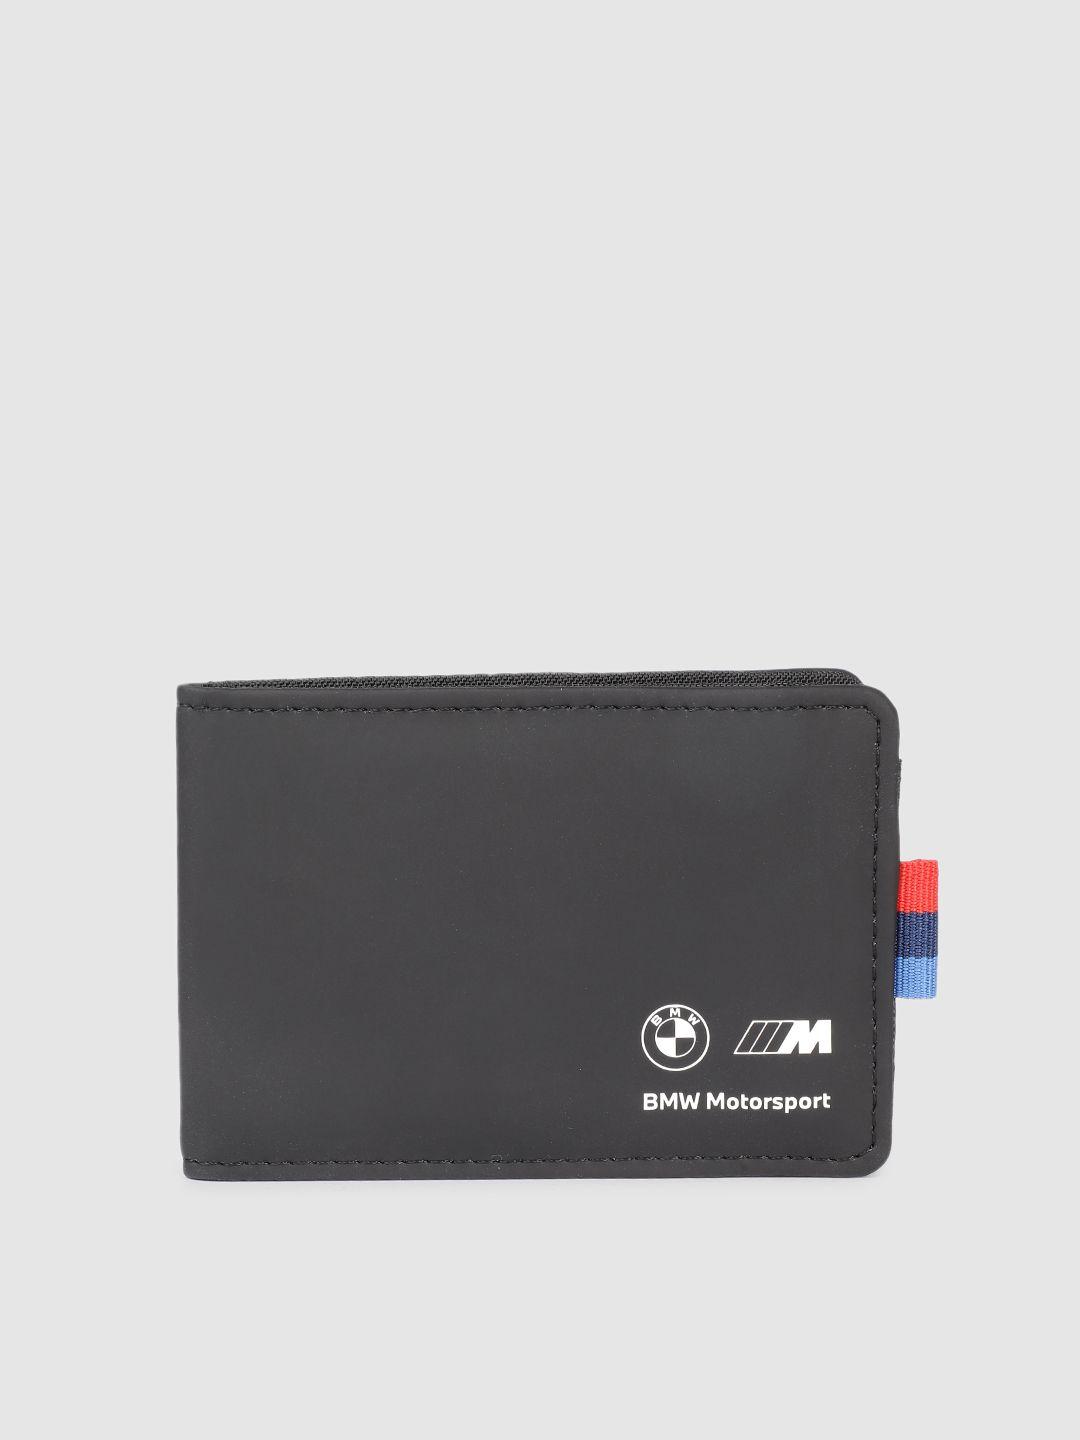 puma-motorsport-unisex-bmw-card-holder